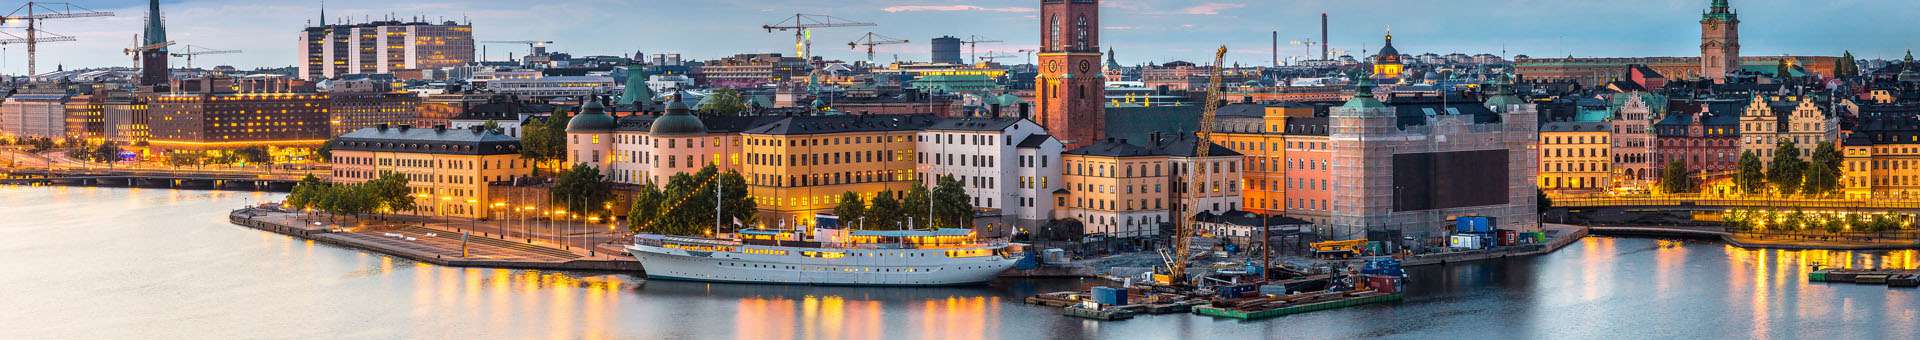 Rechercher des informations WHOIS sur les noms de domaine en Suède